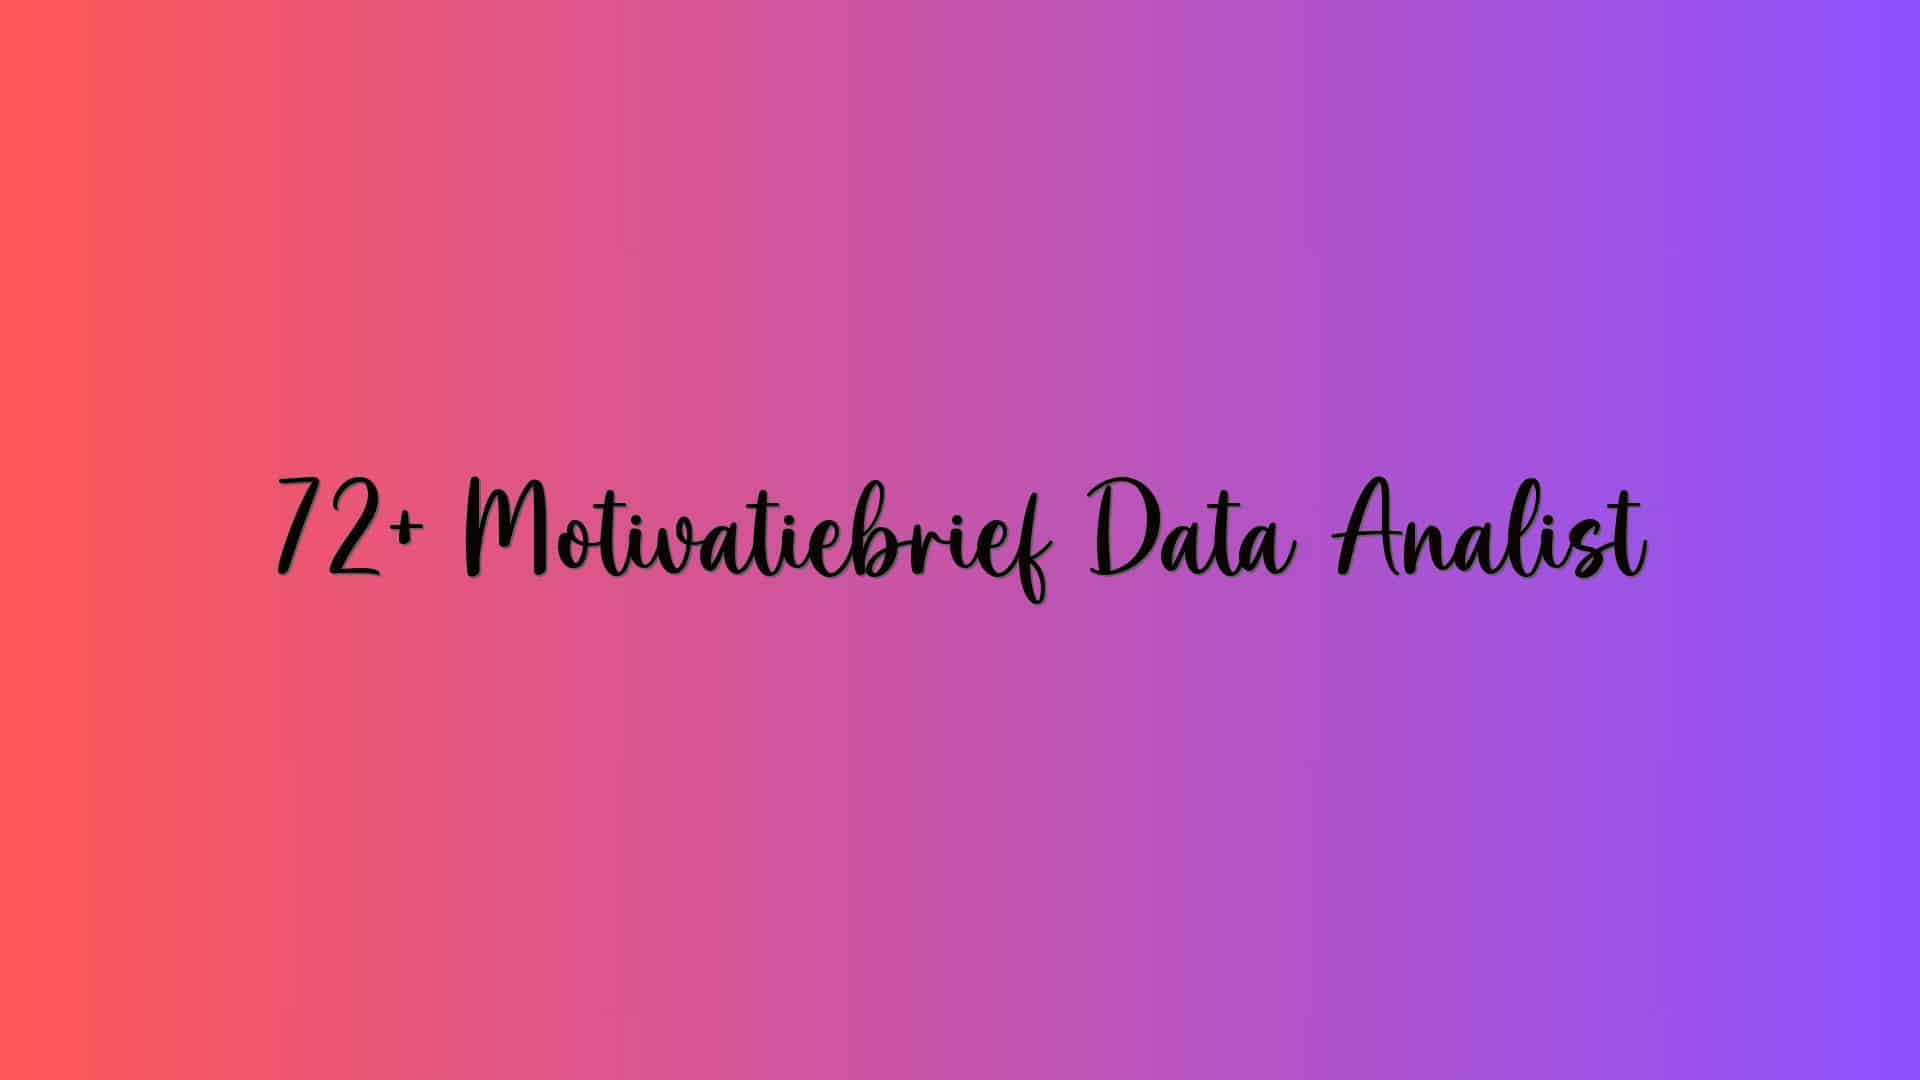 72+ Motivatiebrief Data Analist